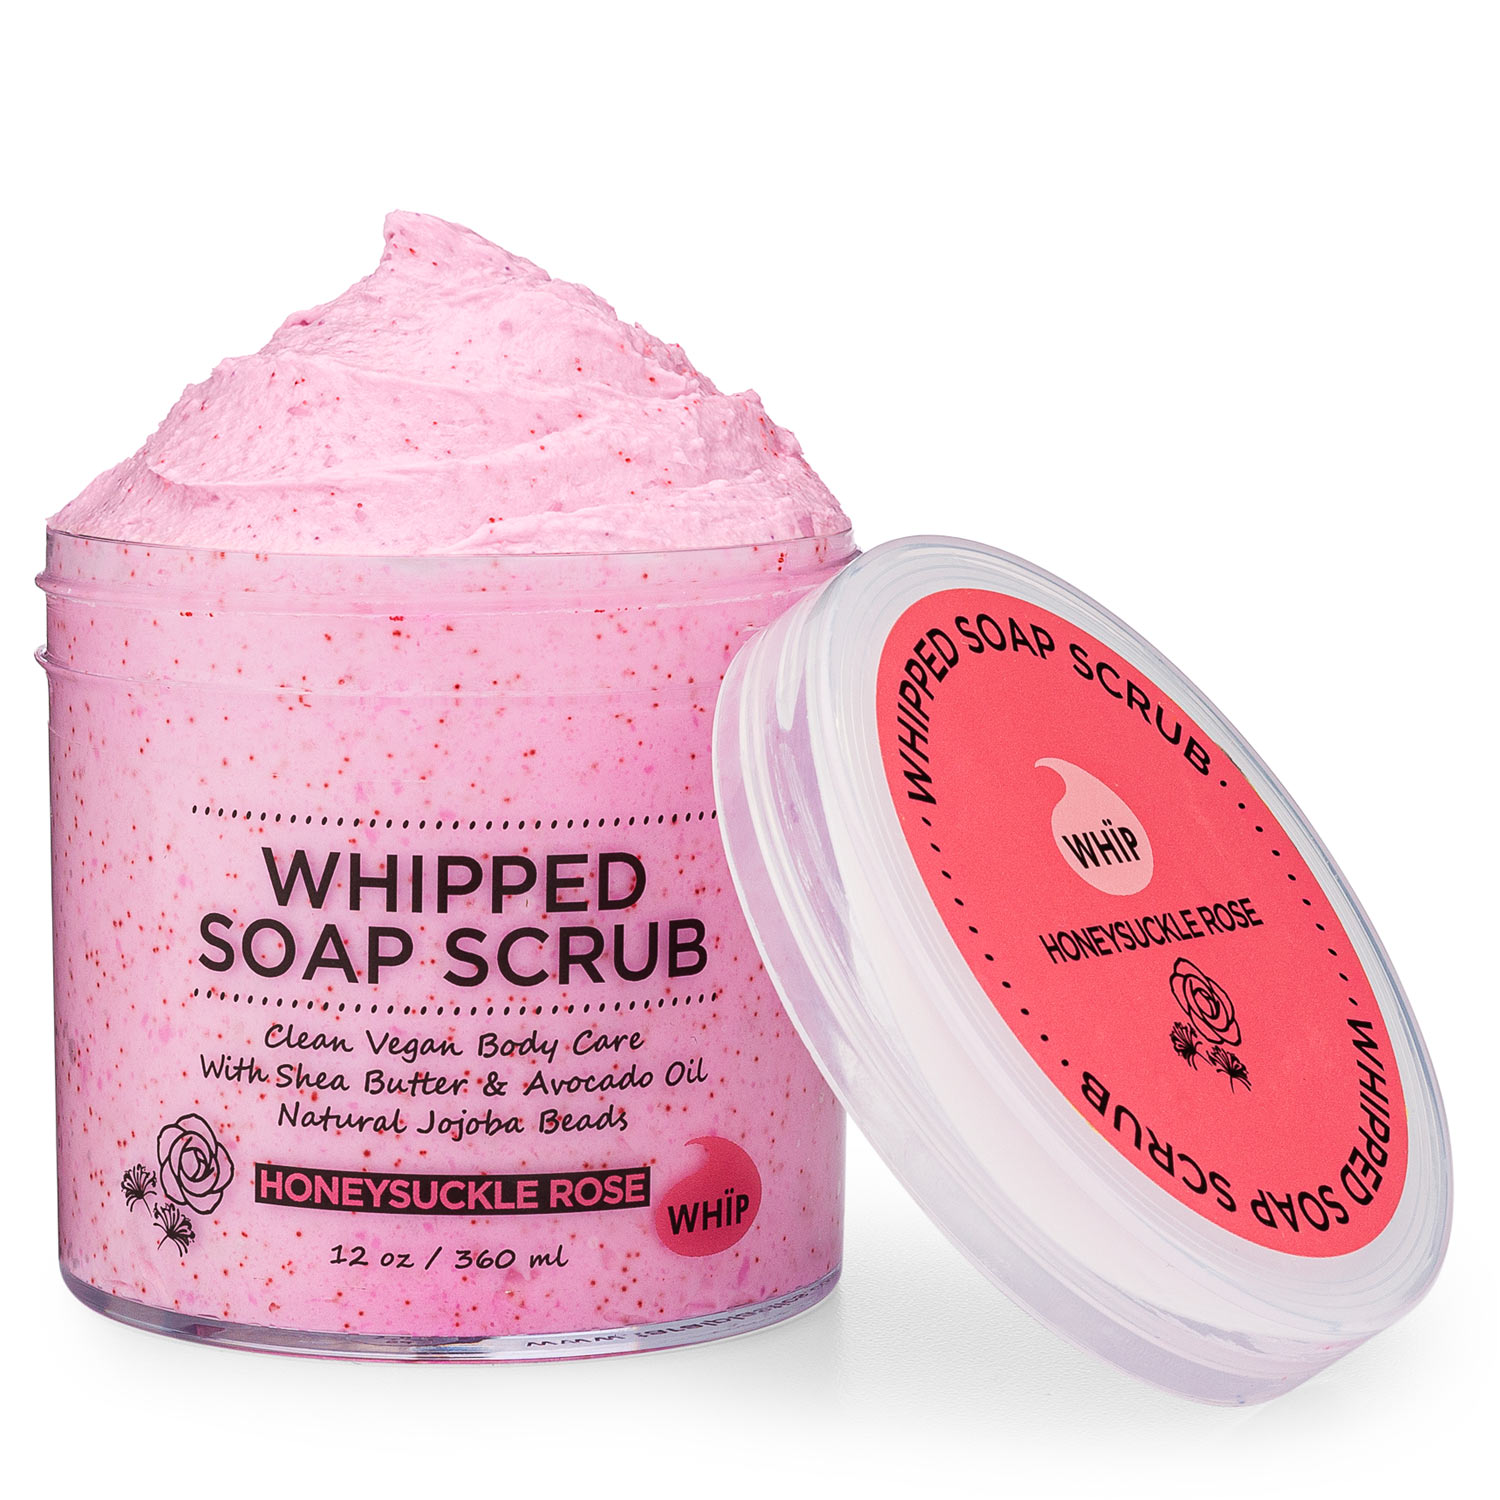 Whipped-Soap-Scrub---Honeysuckle-Rose-WHÏP